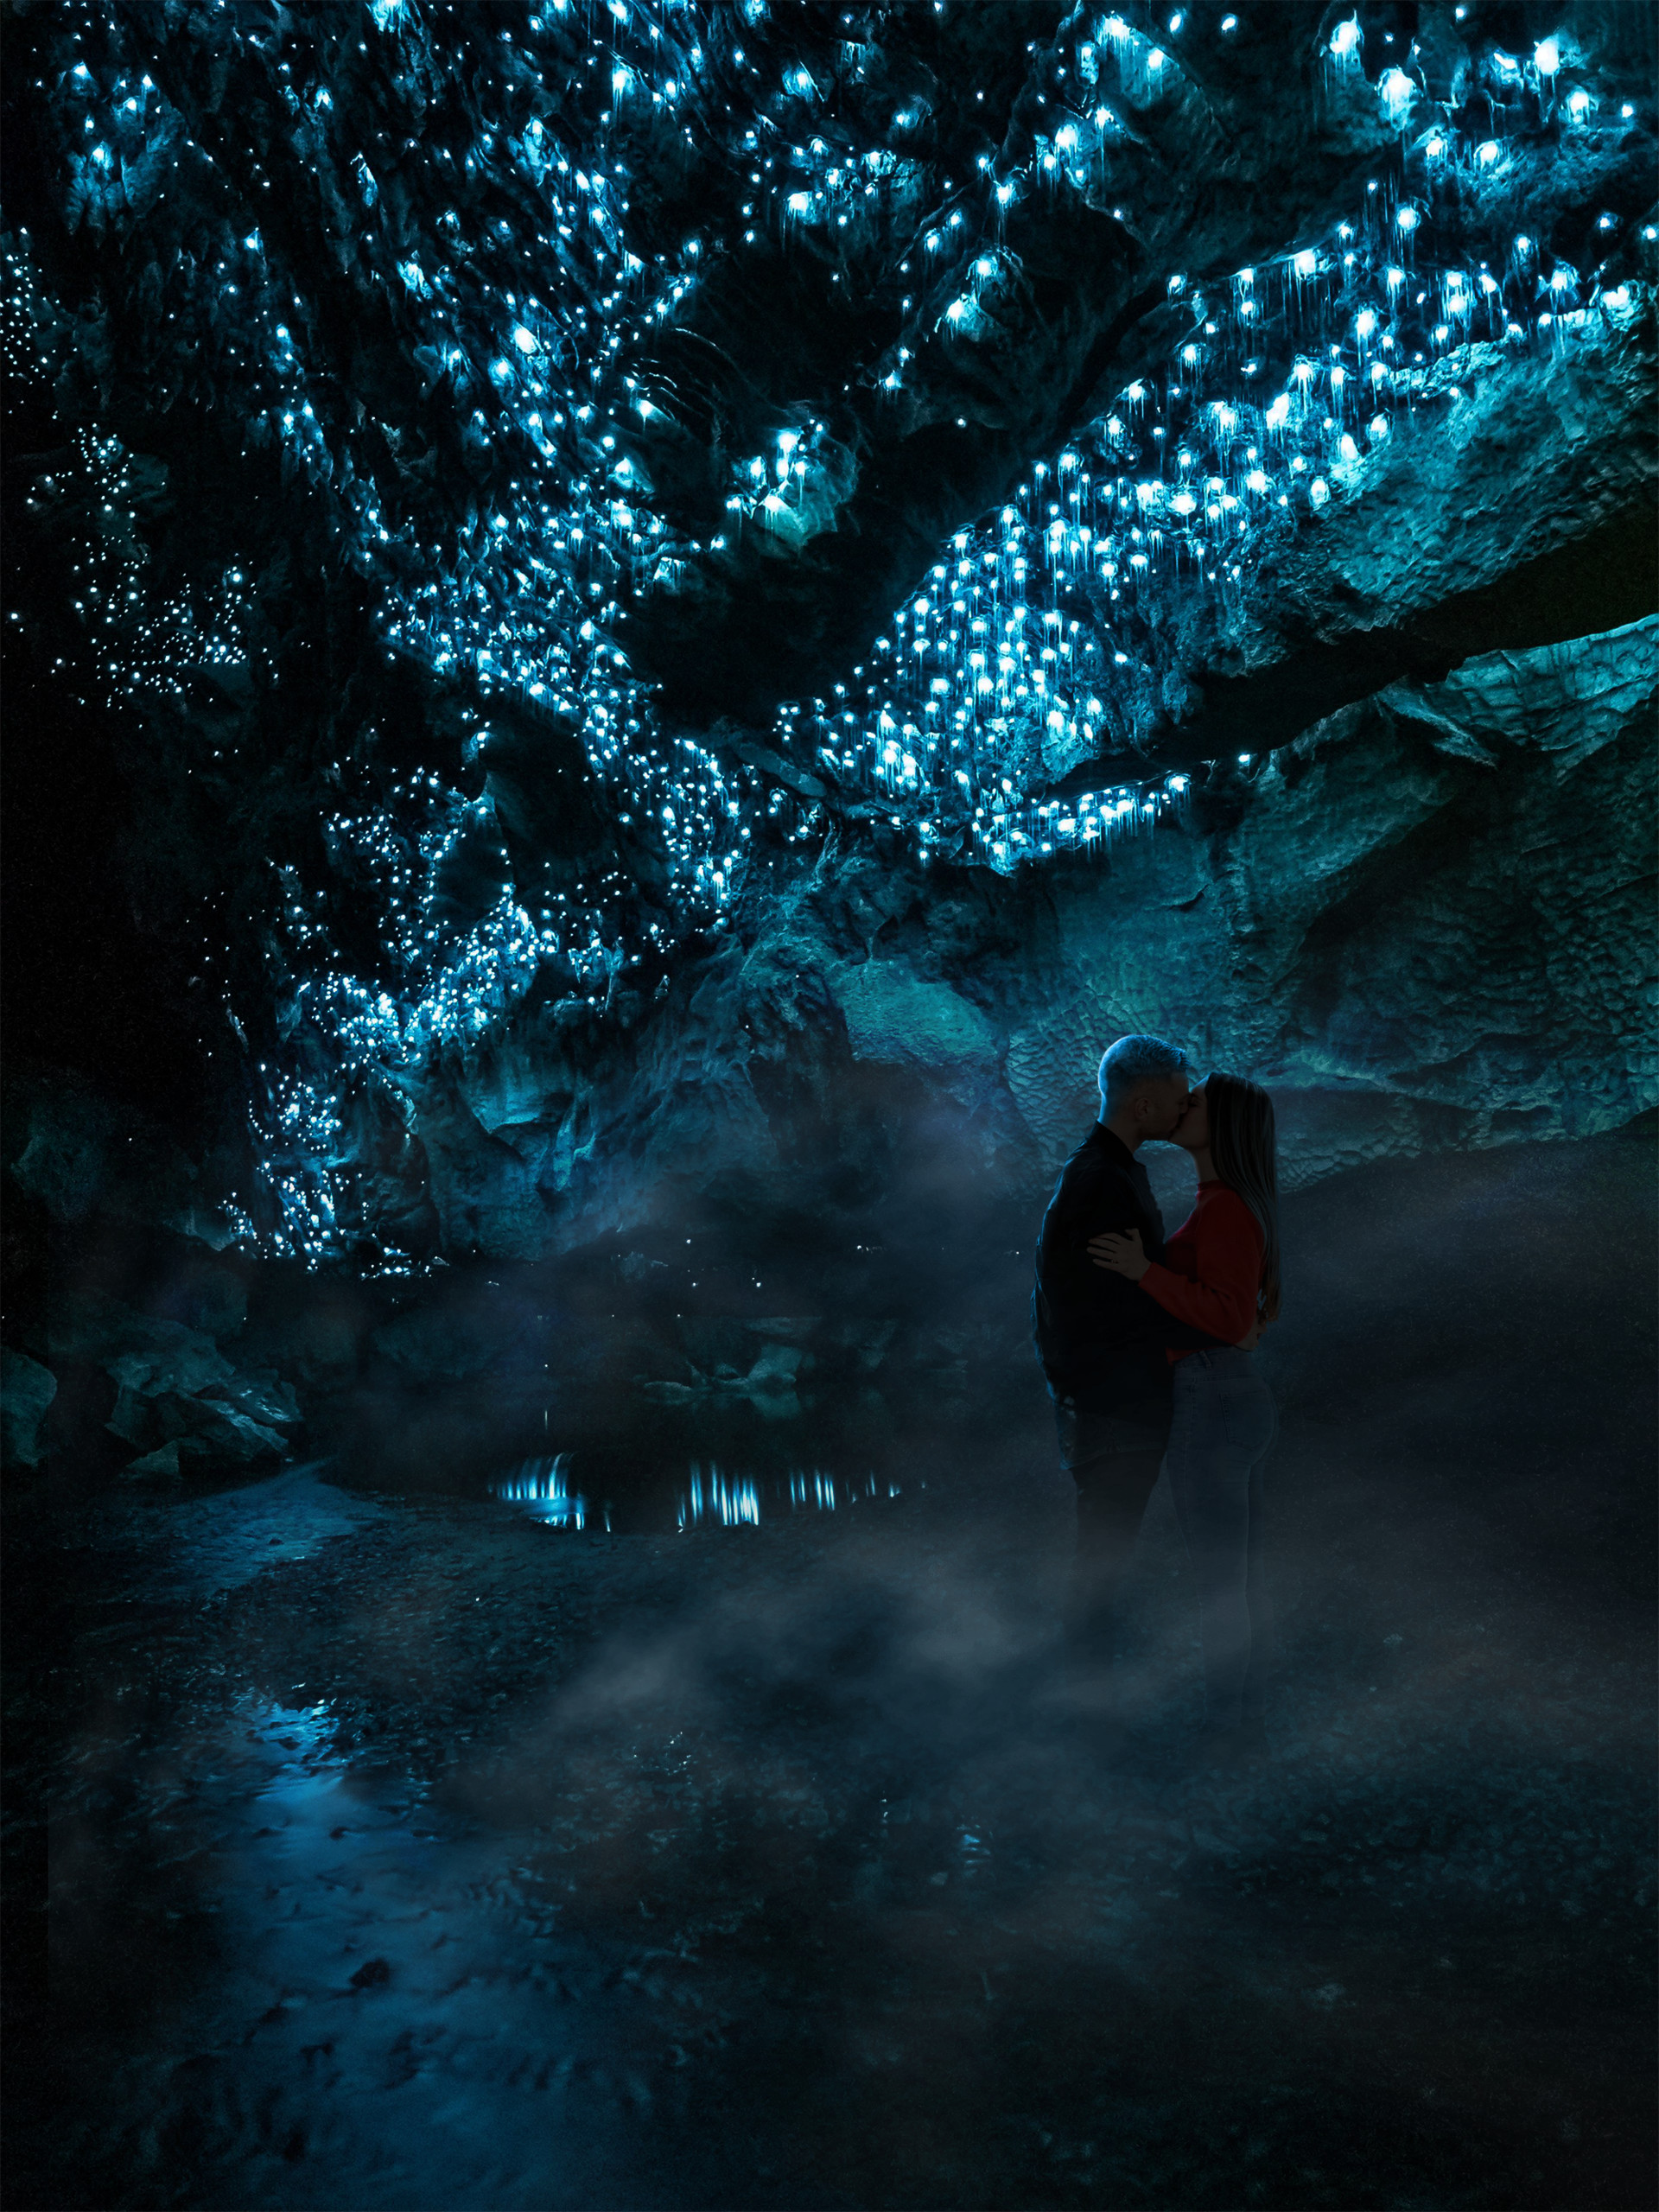 Big mother nature cave. Пещеры светлячков Вайтомо. Пещеры светлячков Вайтомо, новая Зеландия. Пещеры святлечуов вайтоно. Пещера Уэйтомо Глоуворм (Waitomo Glowworm), новая Зеландия:.